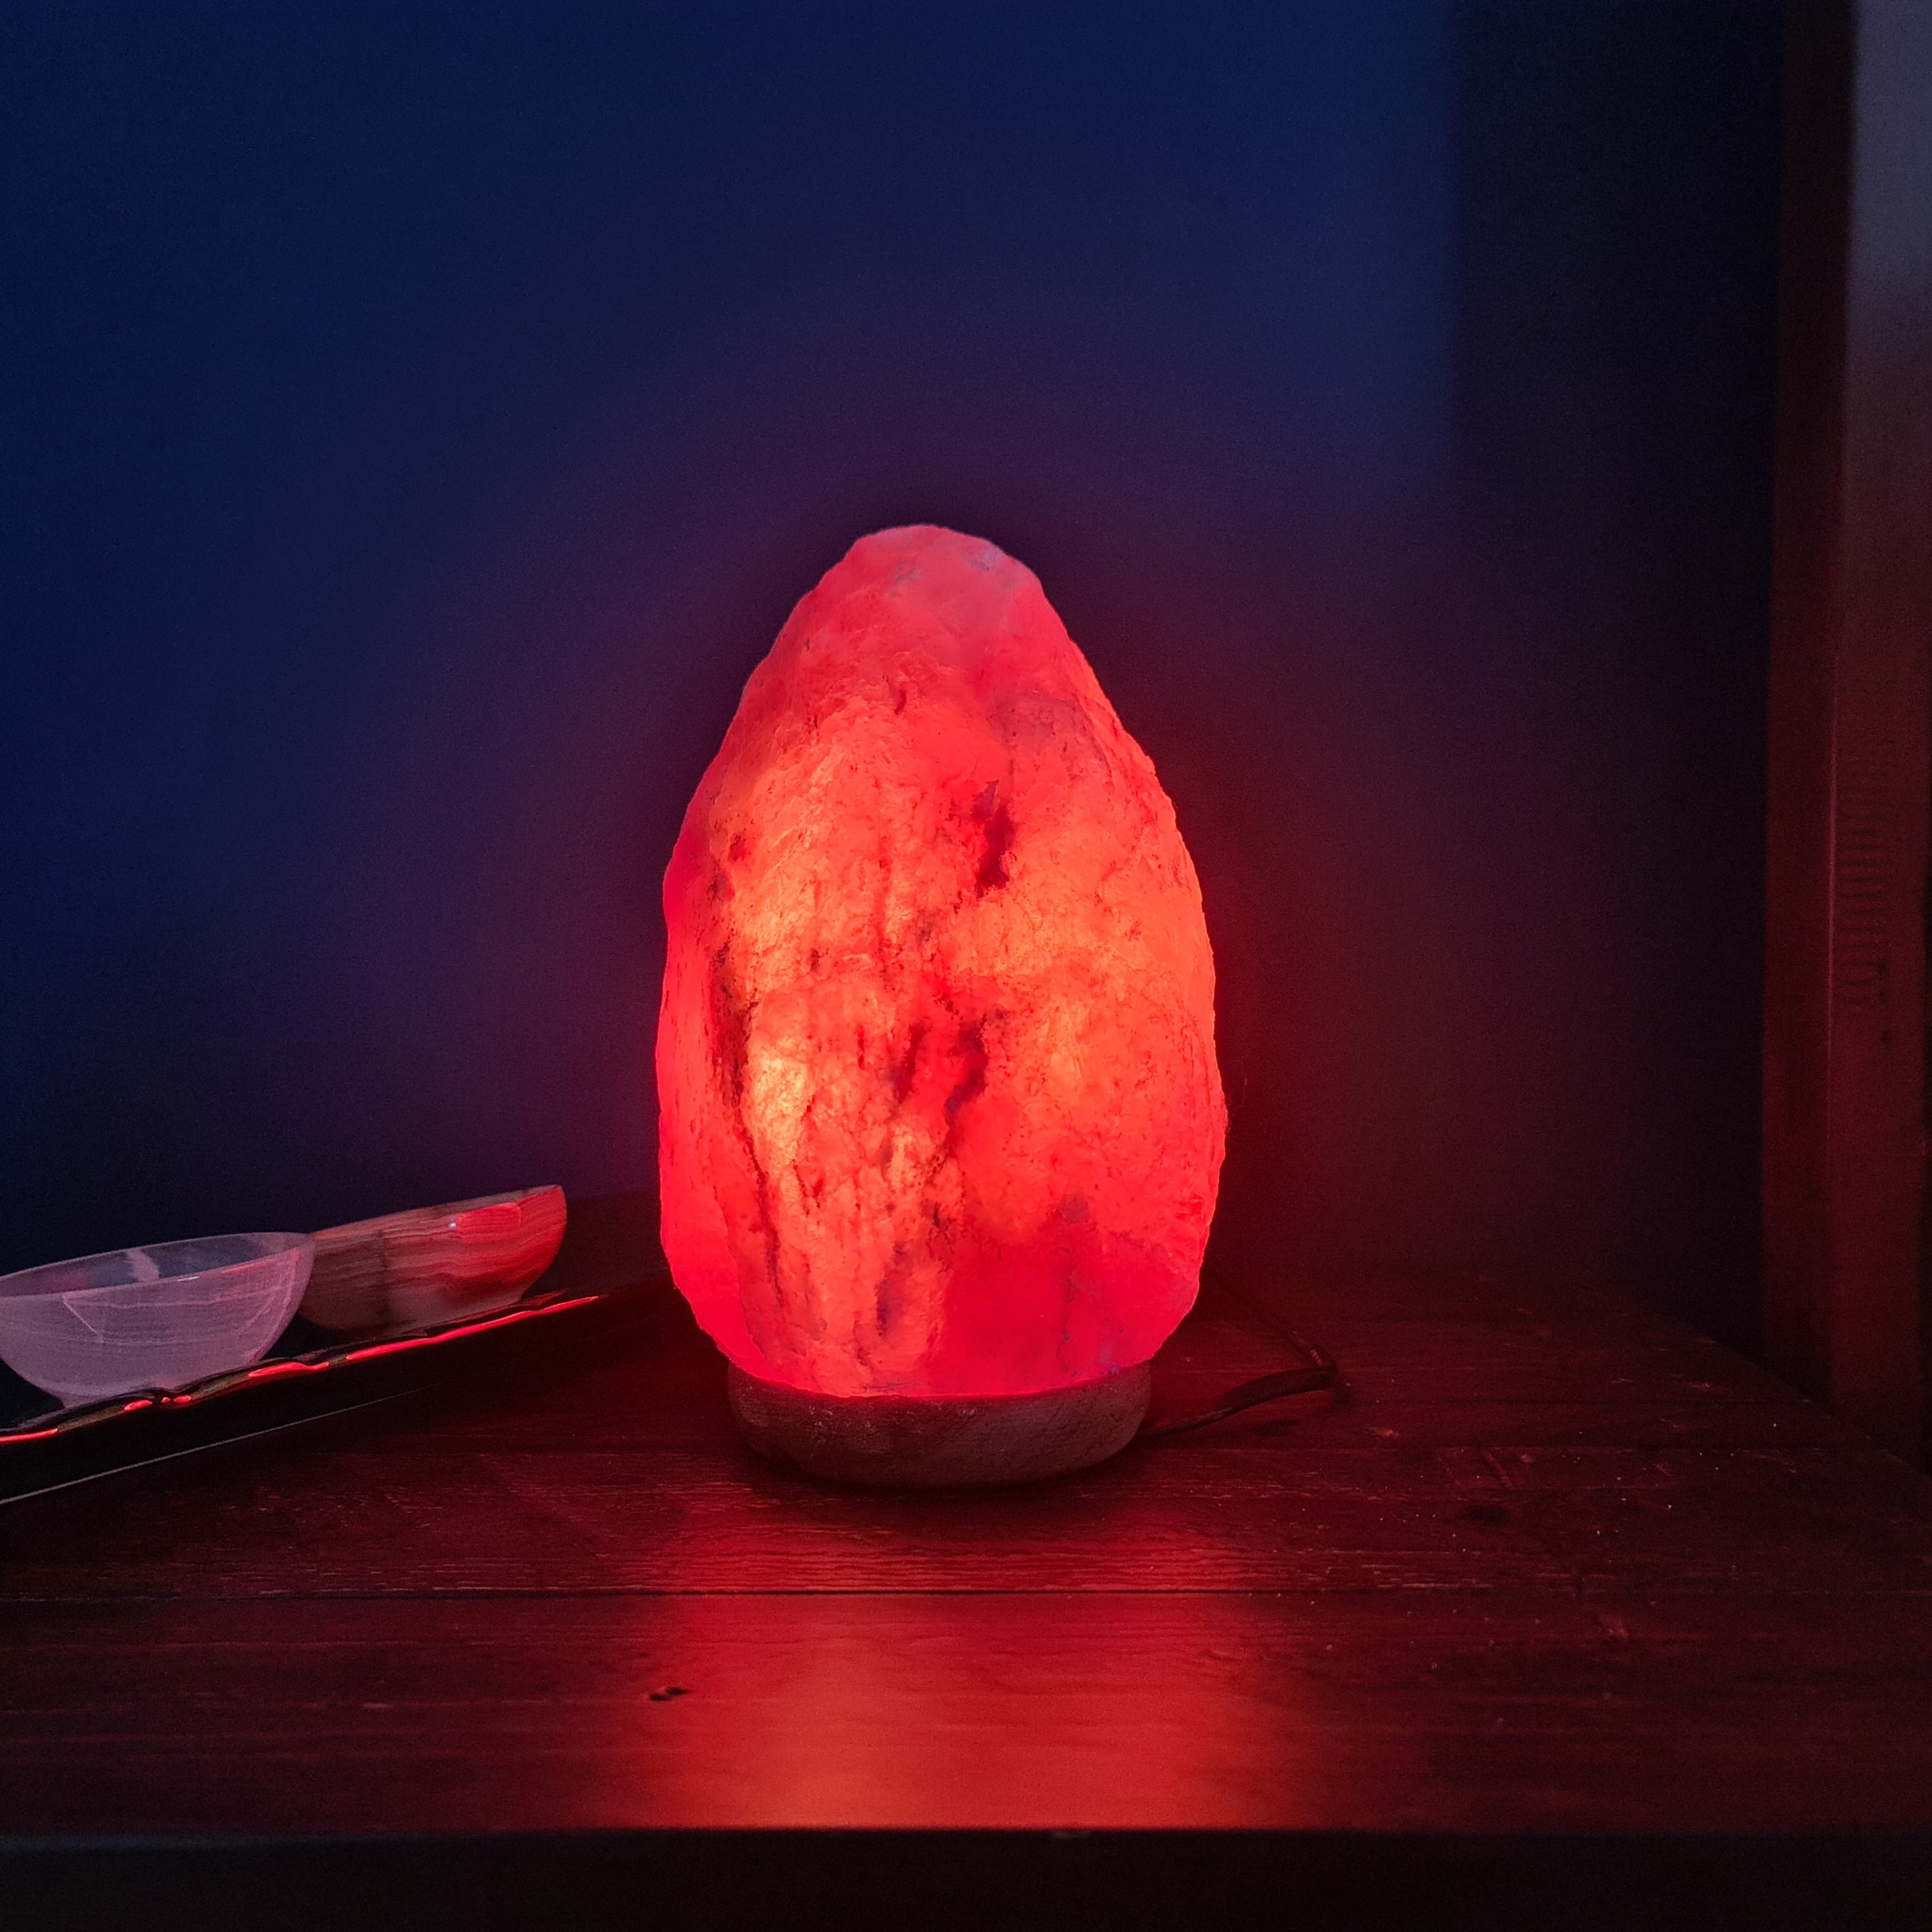 1-2 Kg Natural Himalayan Crystal Salt Lamp (Crafted)